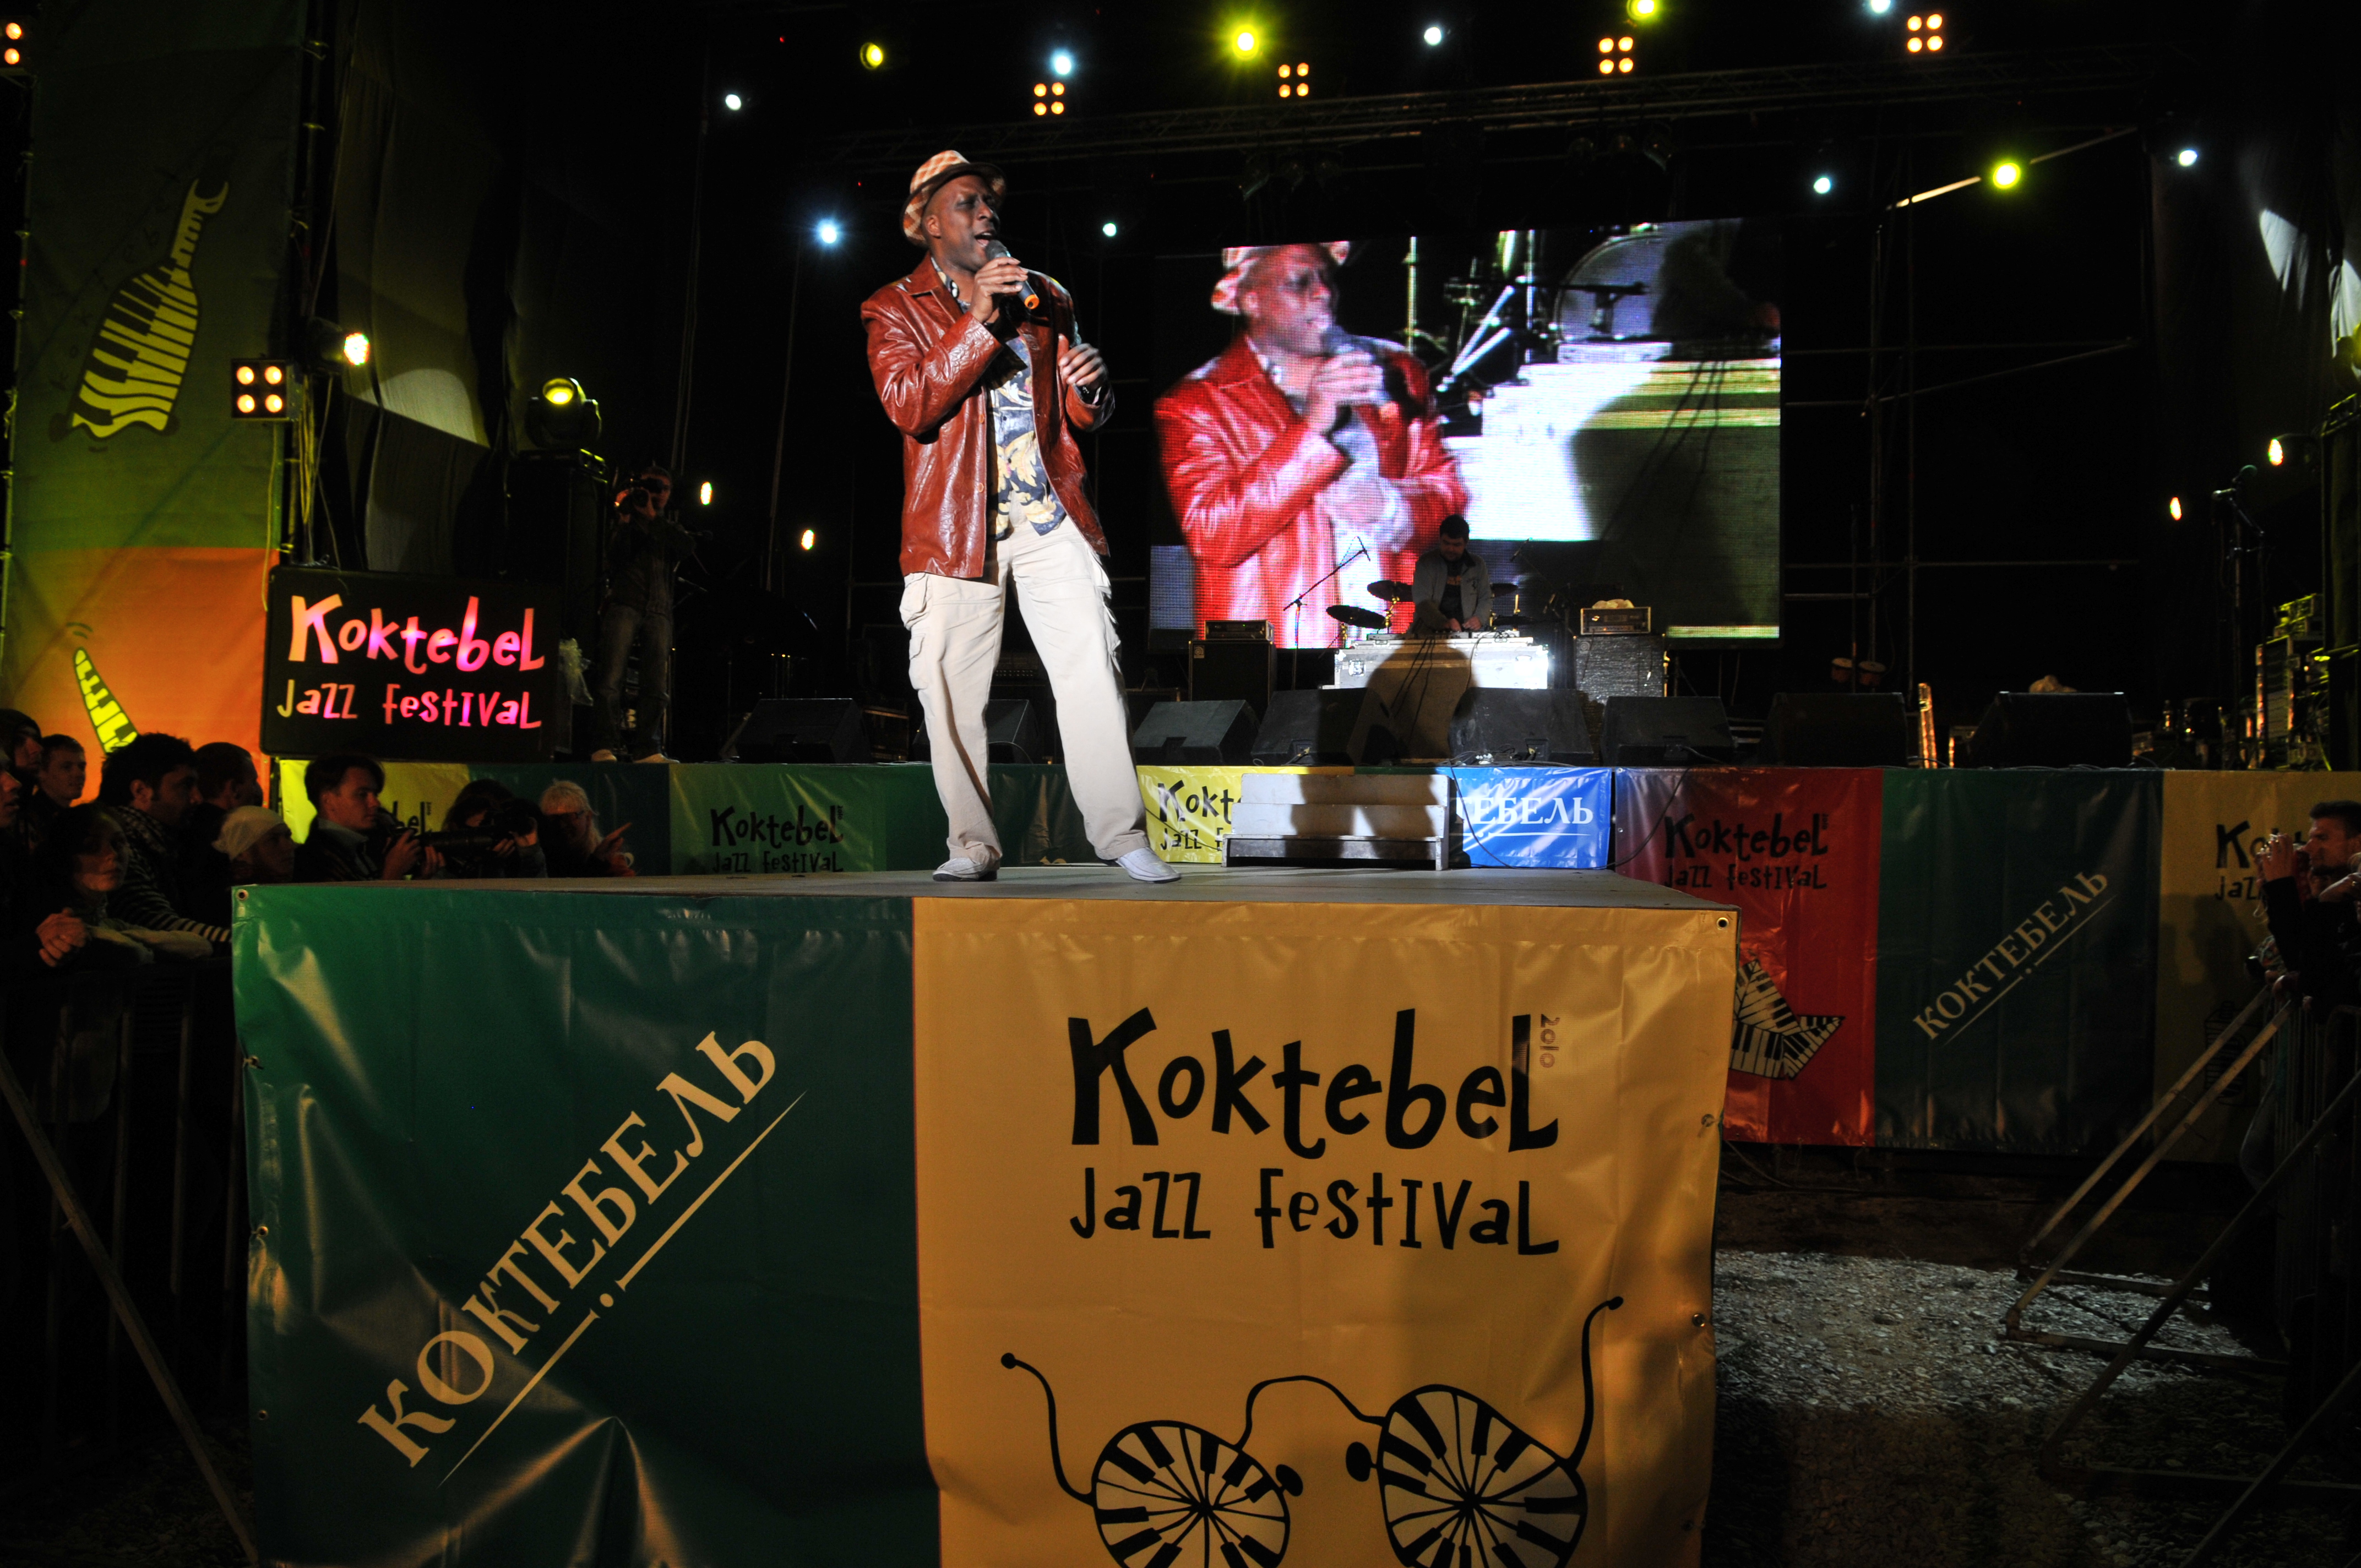 Jazz Koktebel - савмое яркое музыкальное событие осени. Фото с сайта forum.sevastopol.info